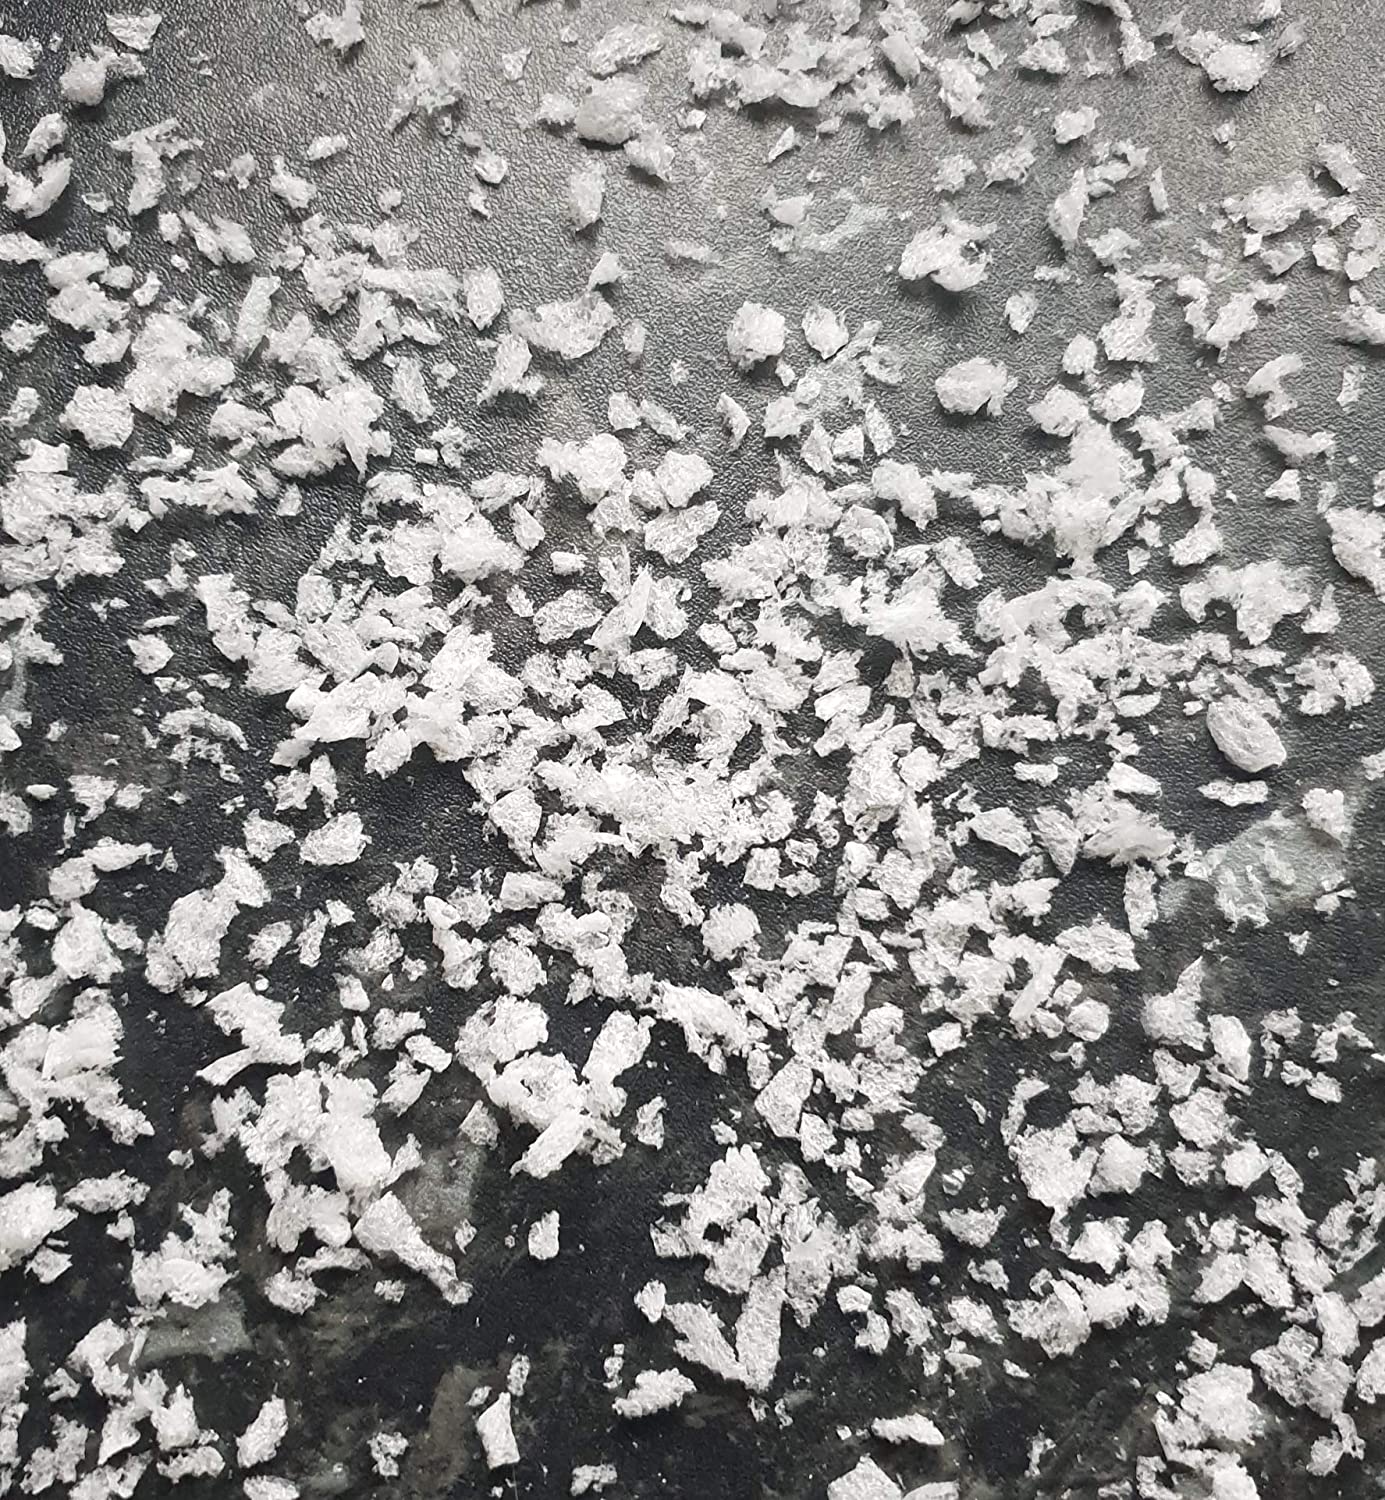 Coriandoli di neve biodegradabili con motivo floreale, coriandoli bianchi